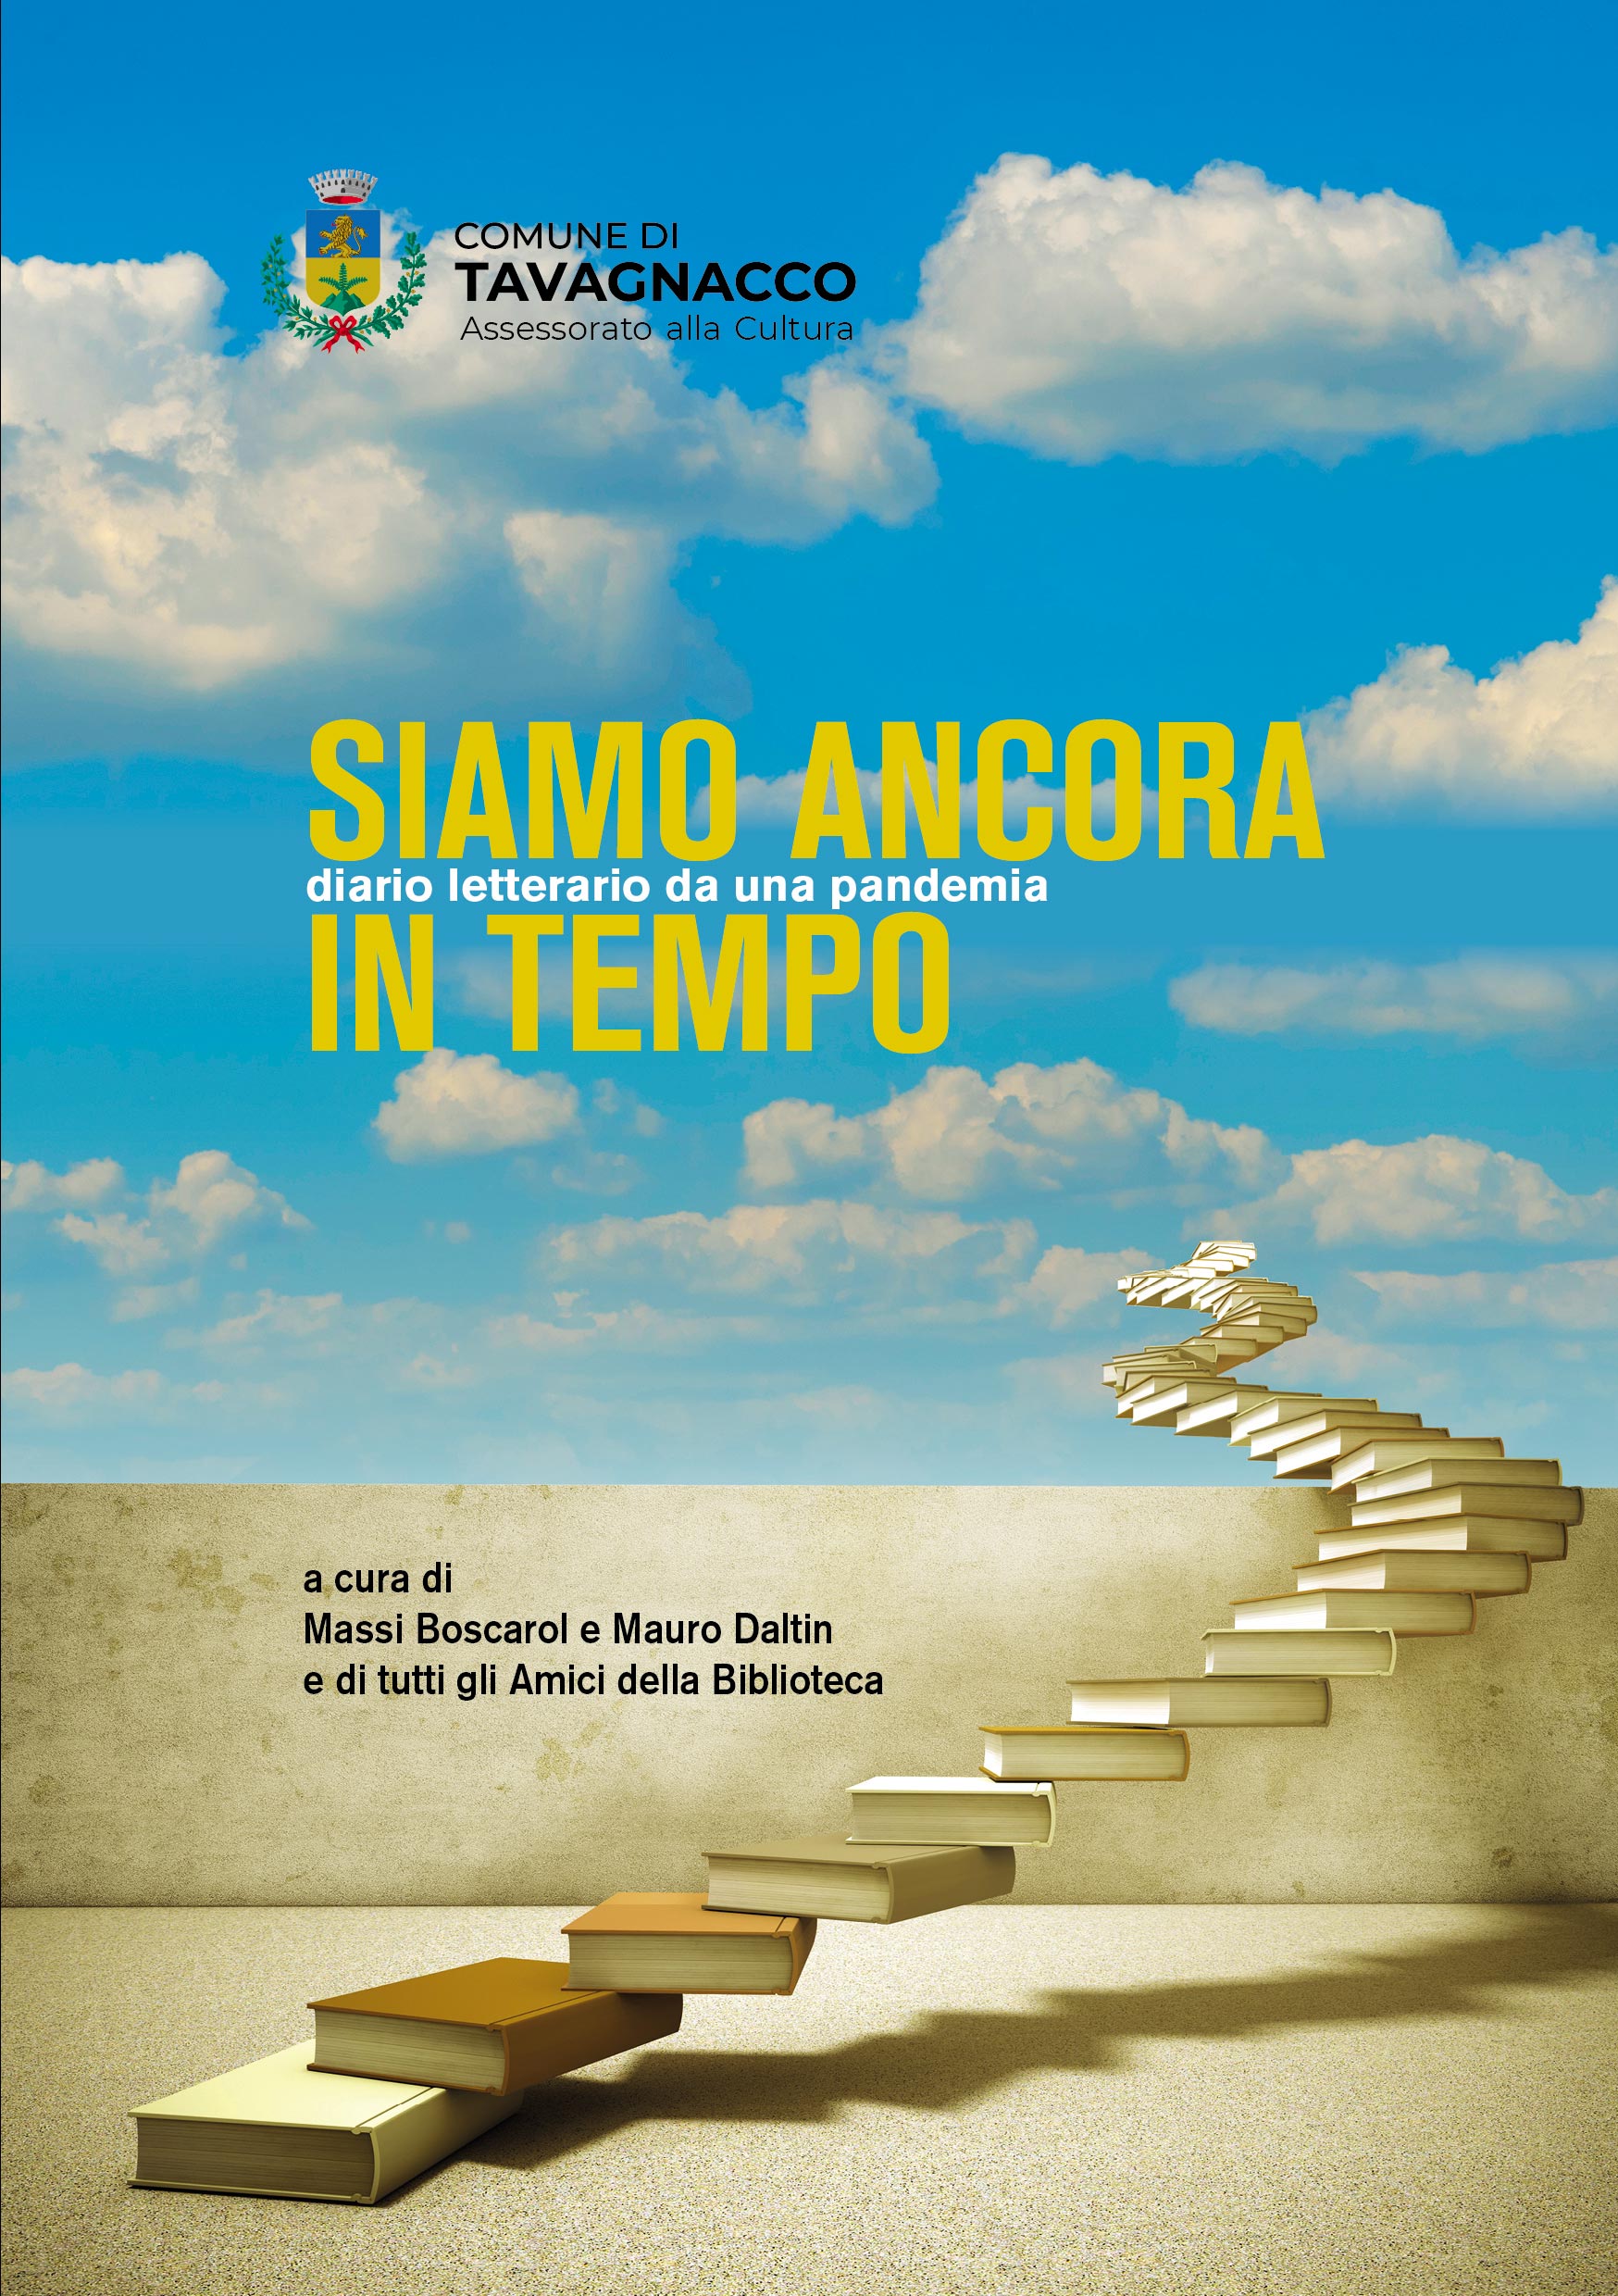 Al momento stai visualizzando “Siamo ancora in tempo”, presentazione venerdì 17 giugno del volume dedicato a Paolo Maurensig al Teatro Luigi Bon di Colugna (Tavagnacco)